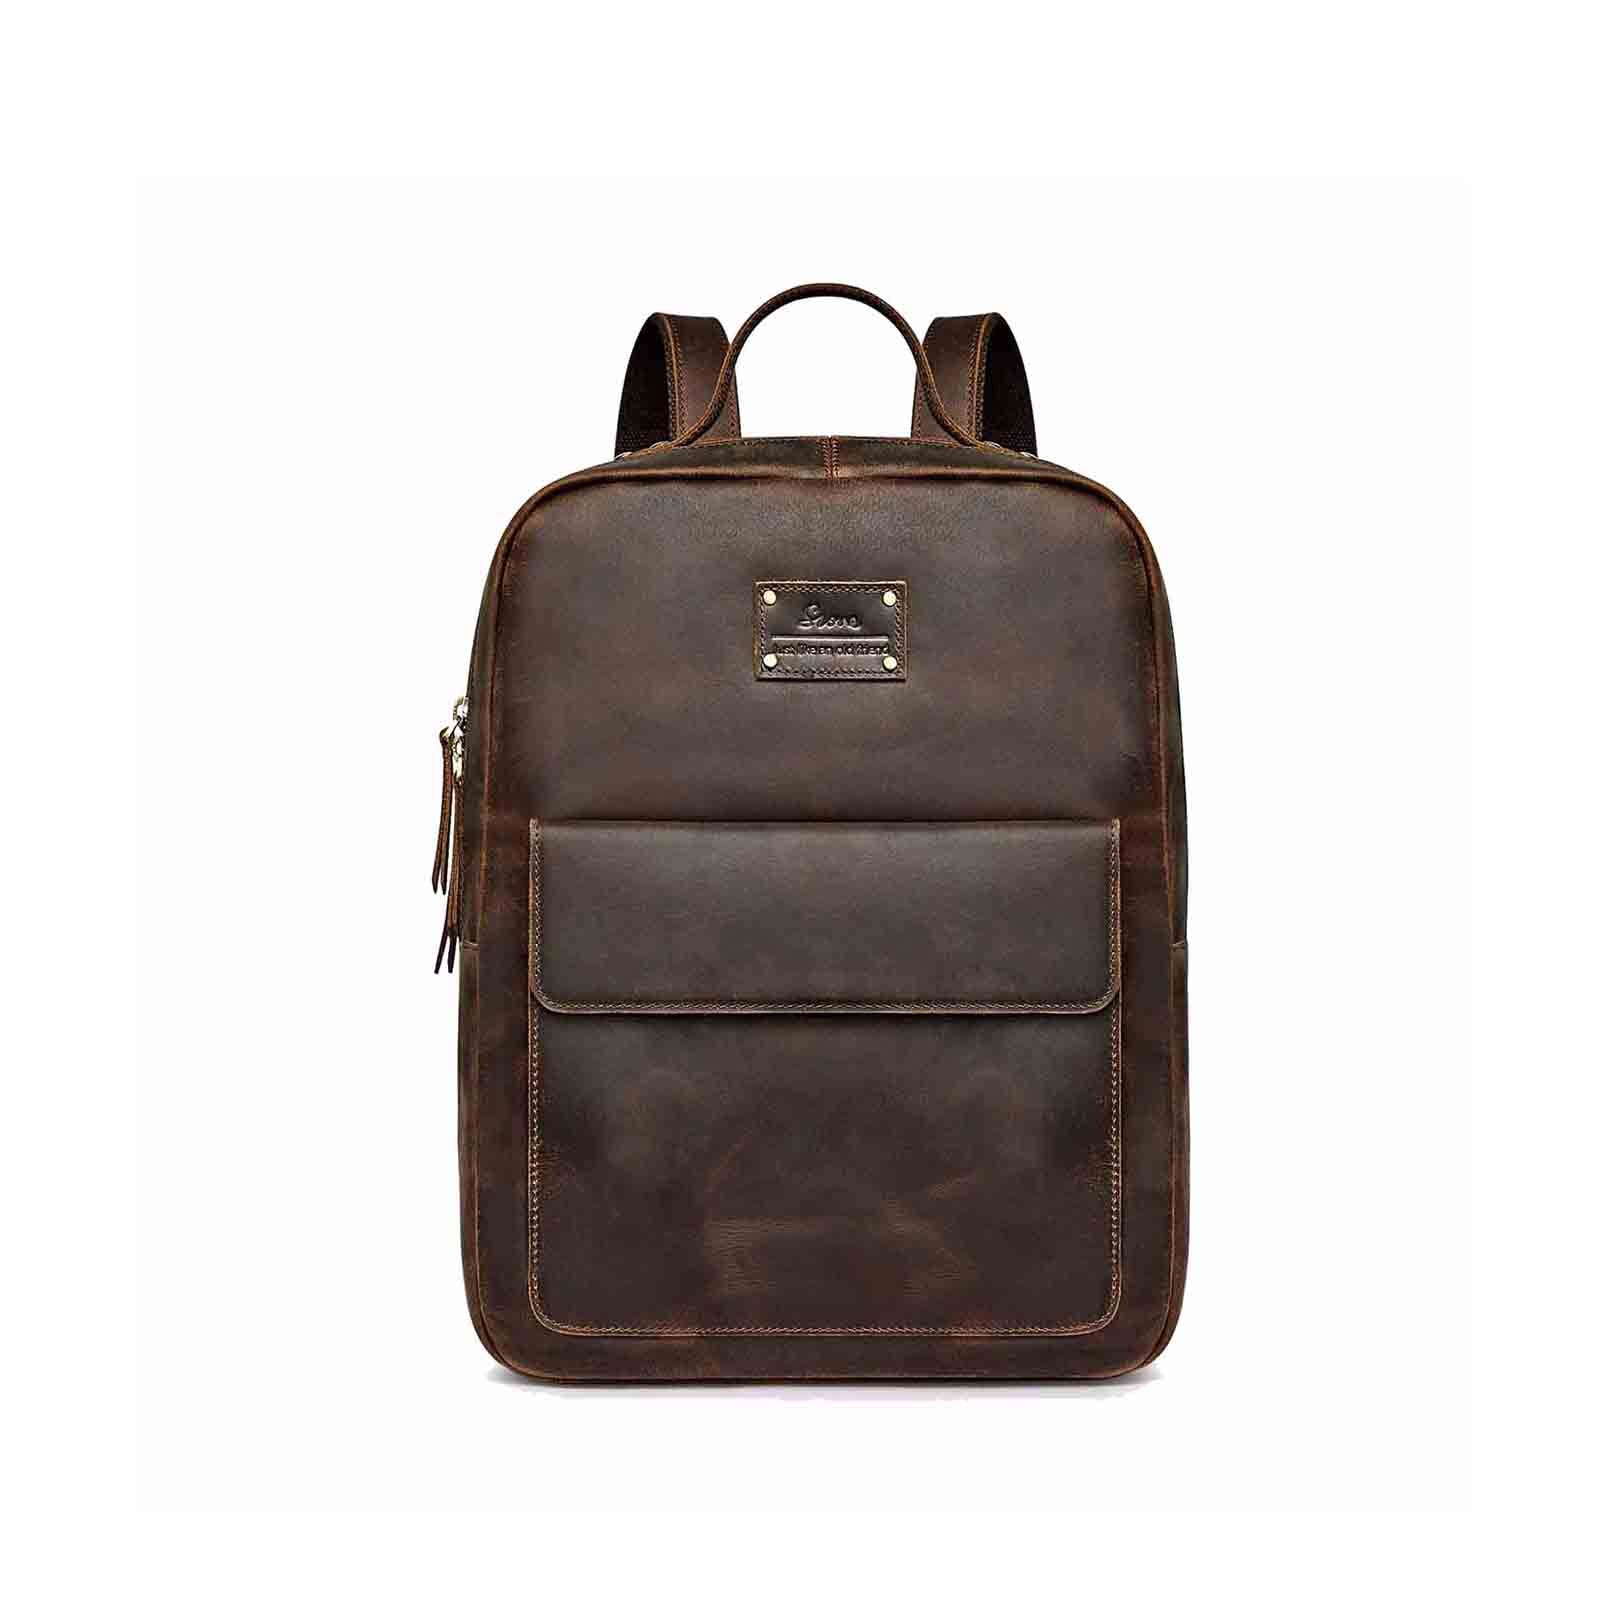 Vintage Genuine Leather School Backpack